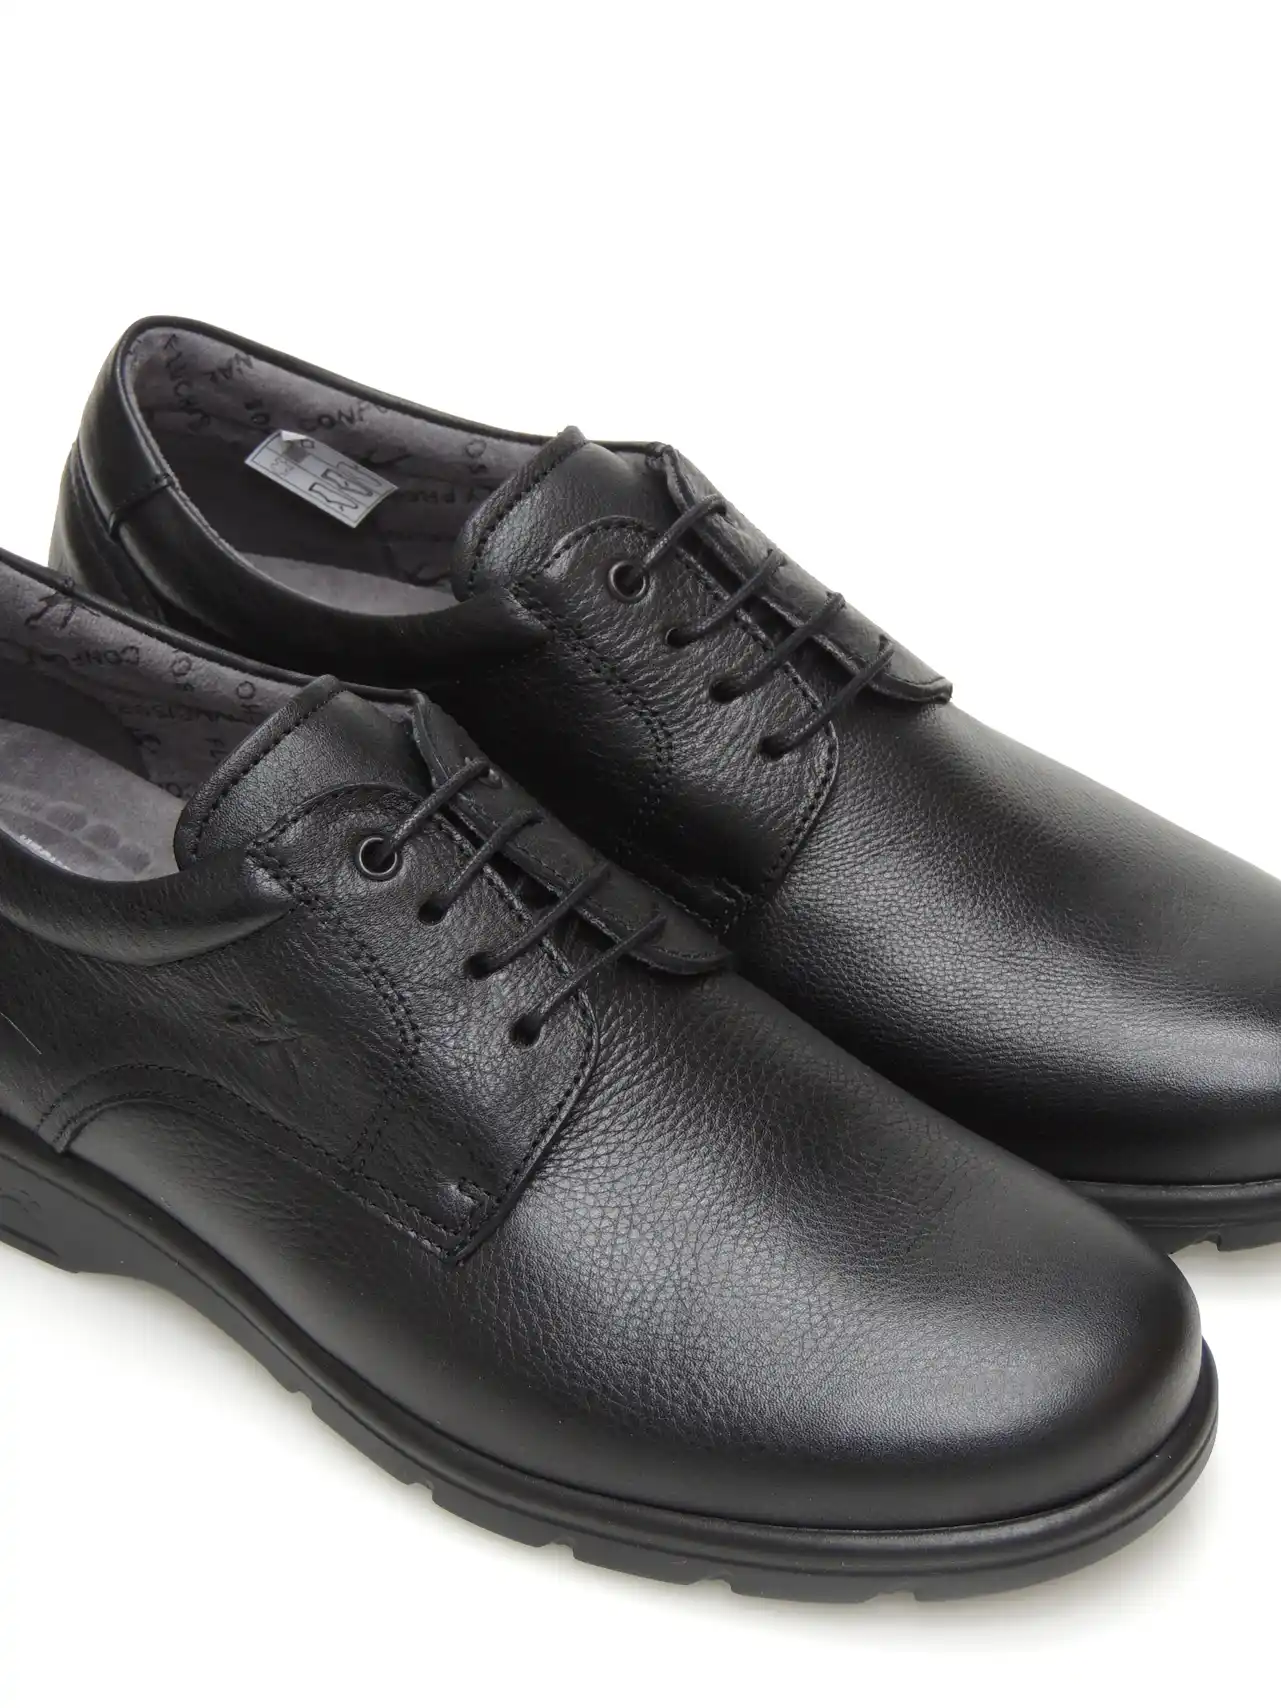 zapatos-blucher-fluchos-f1948-piel-negro